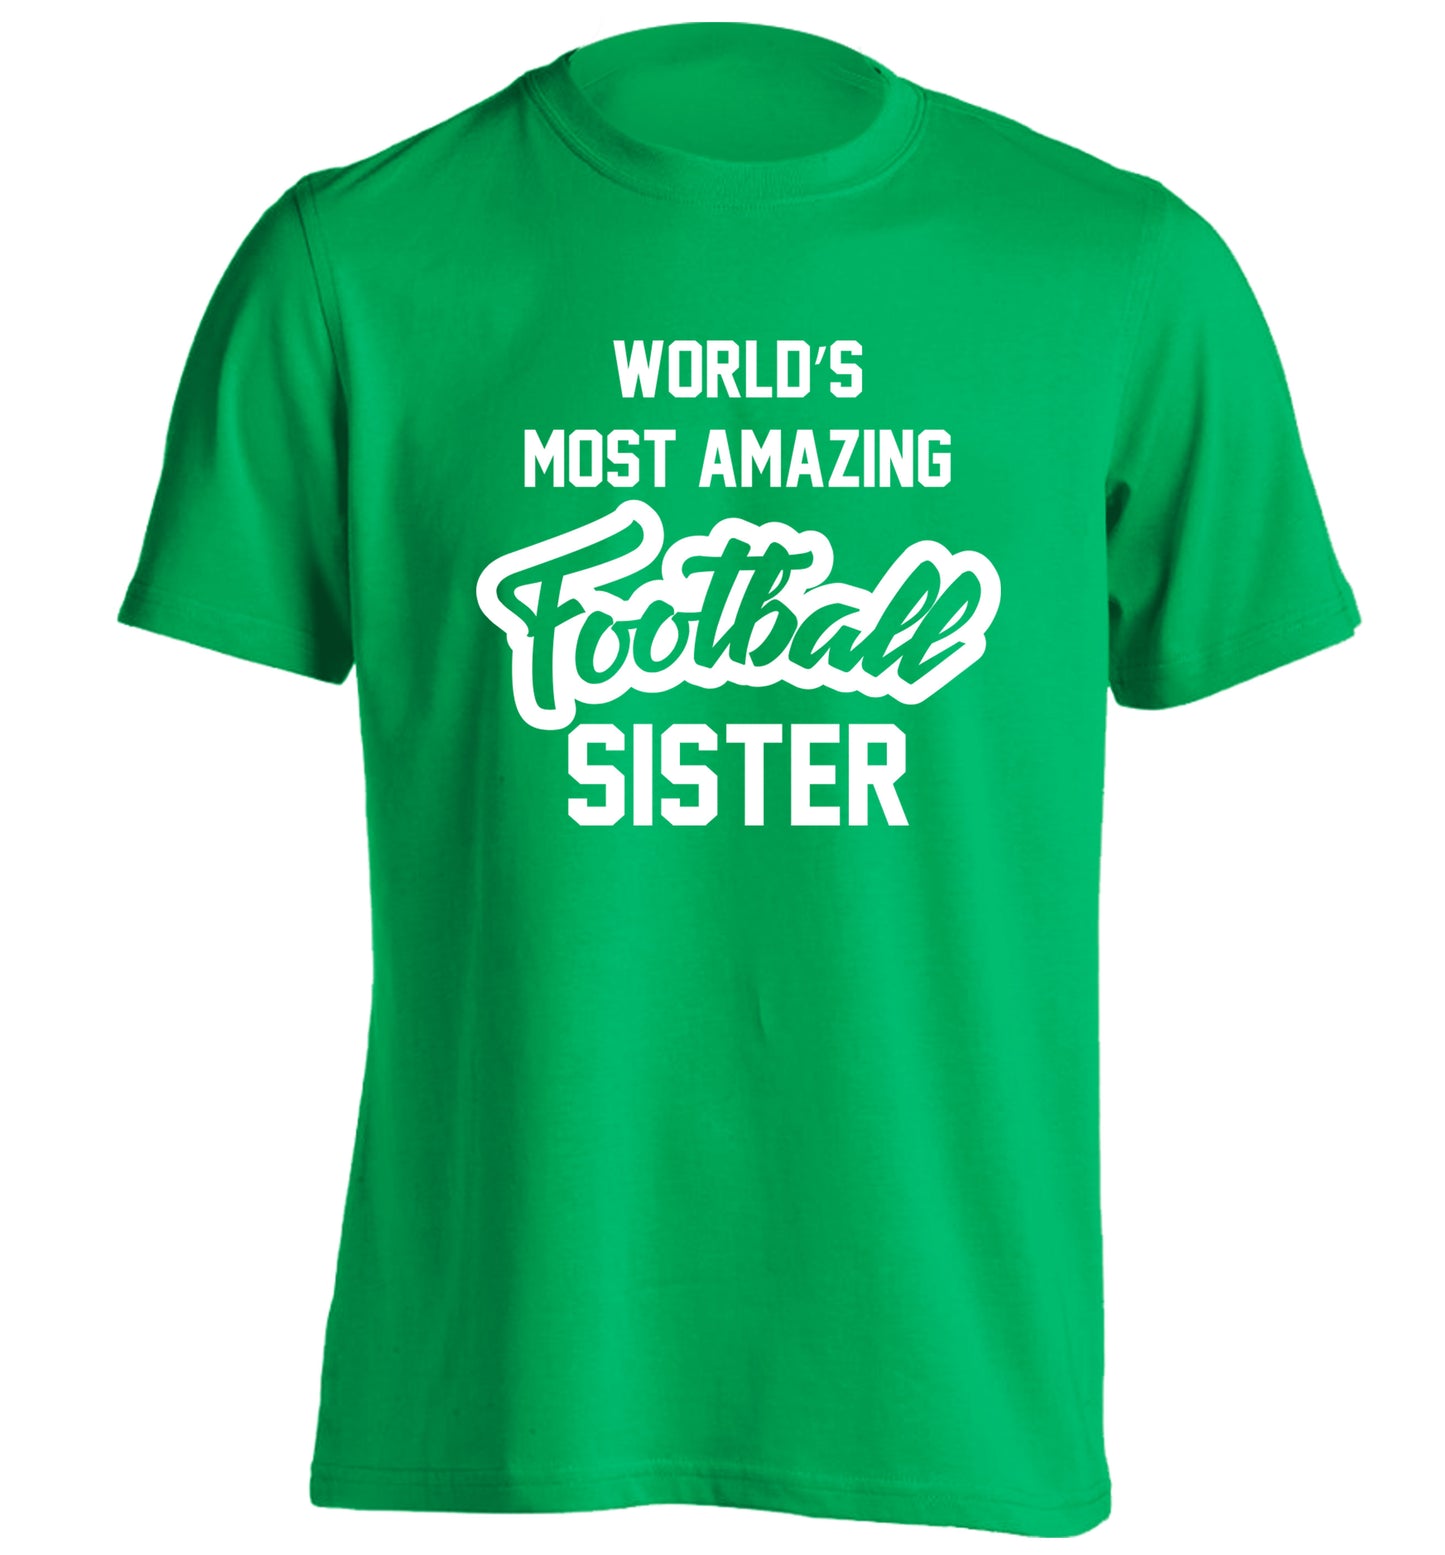 Worlds most amazing football sister adults unisexgreen Tshirt 2XL